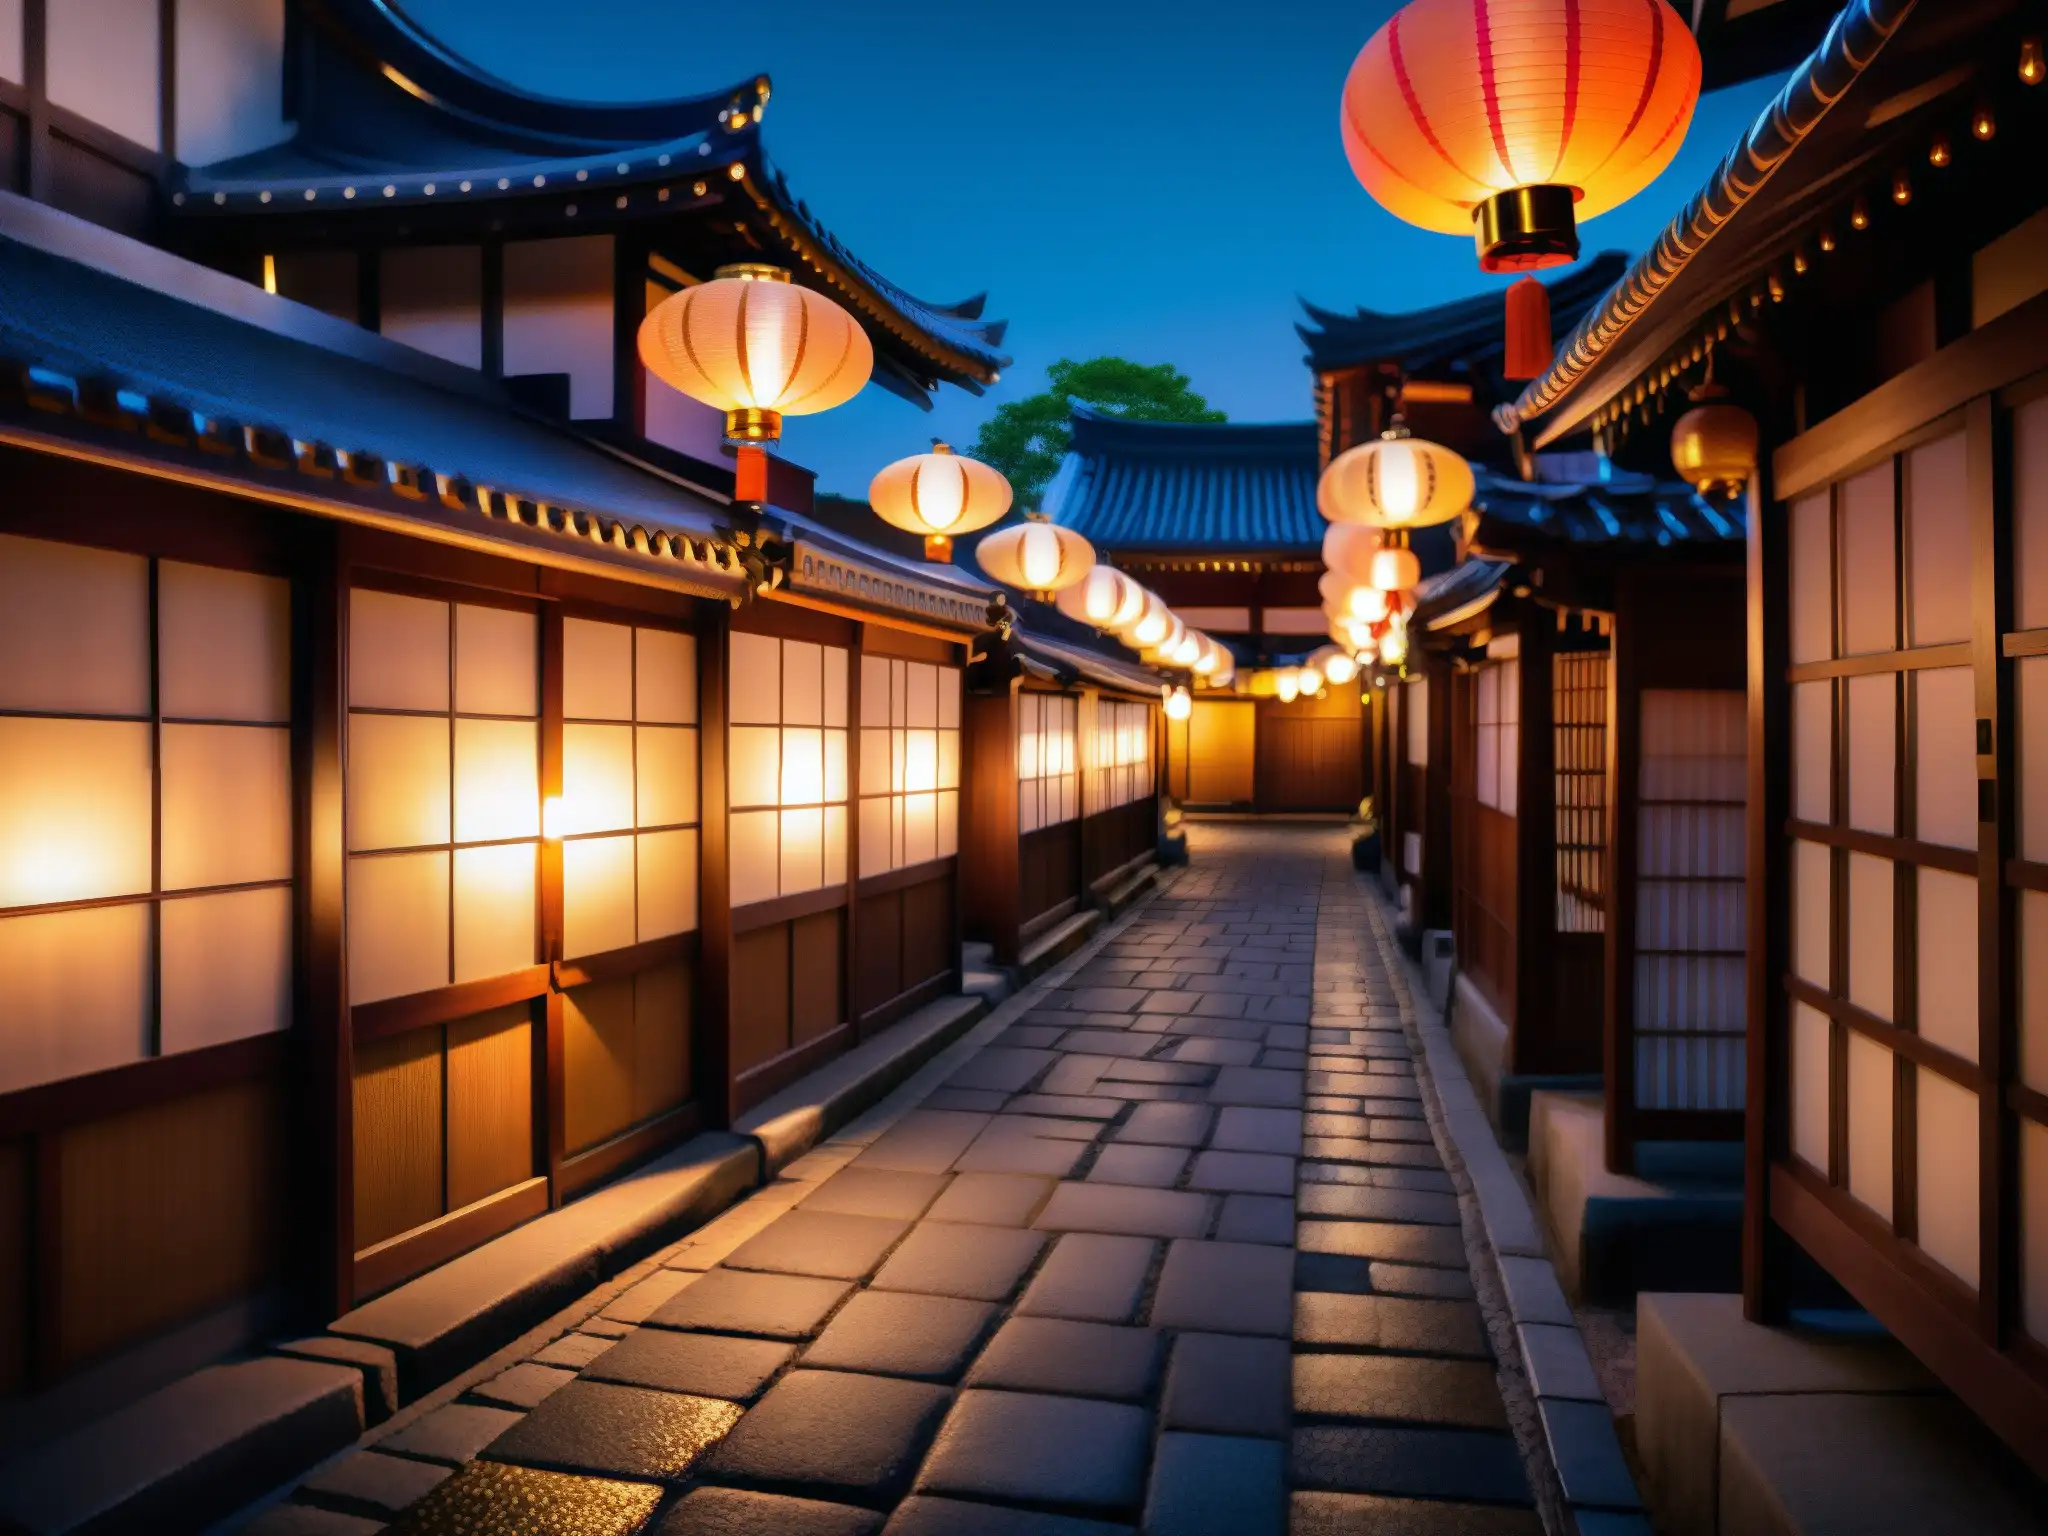 Una misteriosa calle japonesa iluminada por linternas tradicionales, evocando leyendas urbanas japonesas foros online